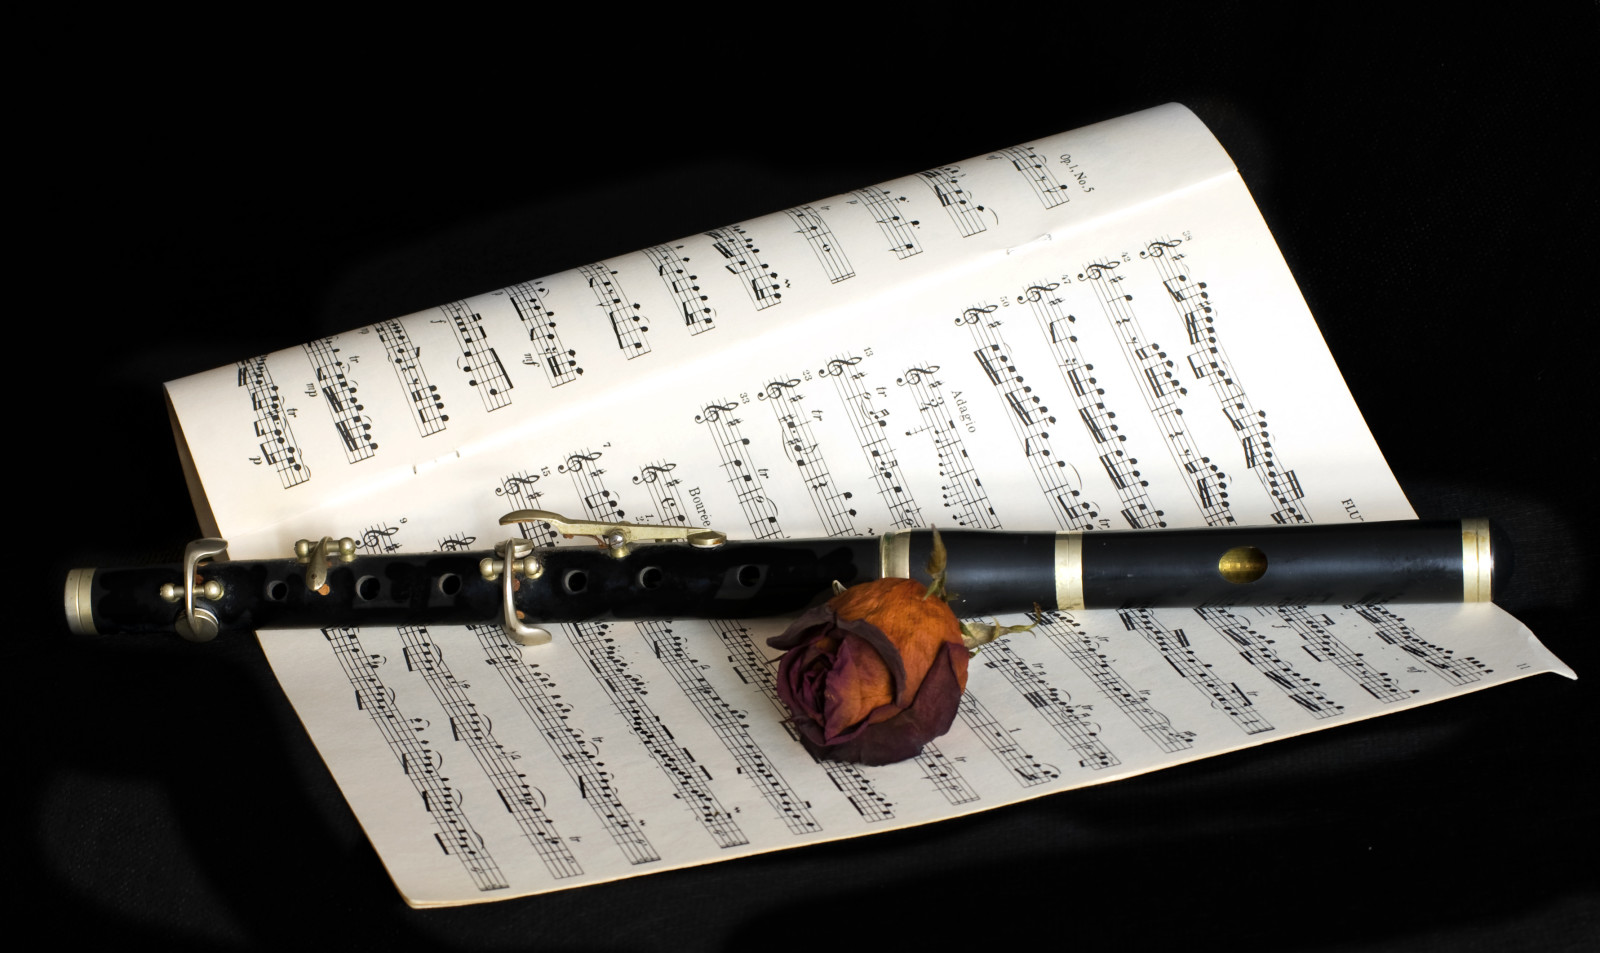 Âm nhạc, bông hoa, ghi chú, ống sáo